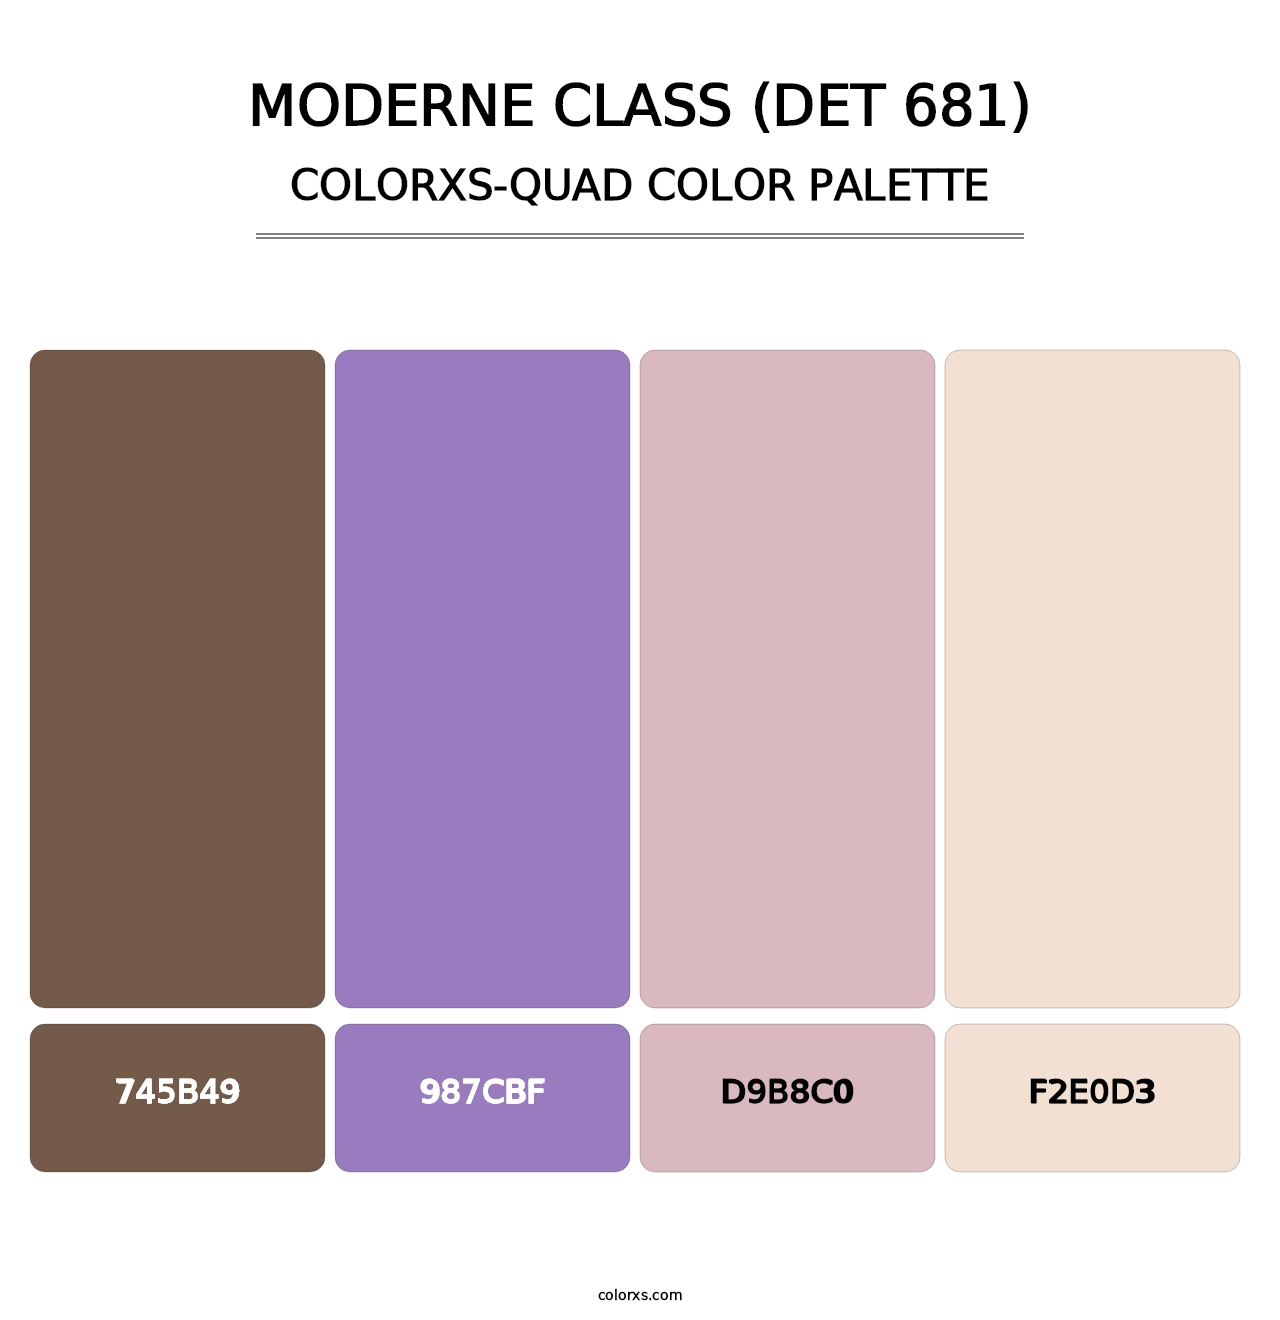 Moderne Class (DET 681) - Colorxs Quad Palette